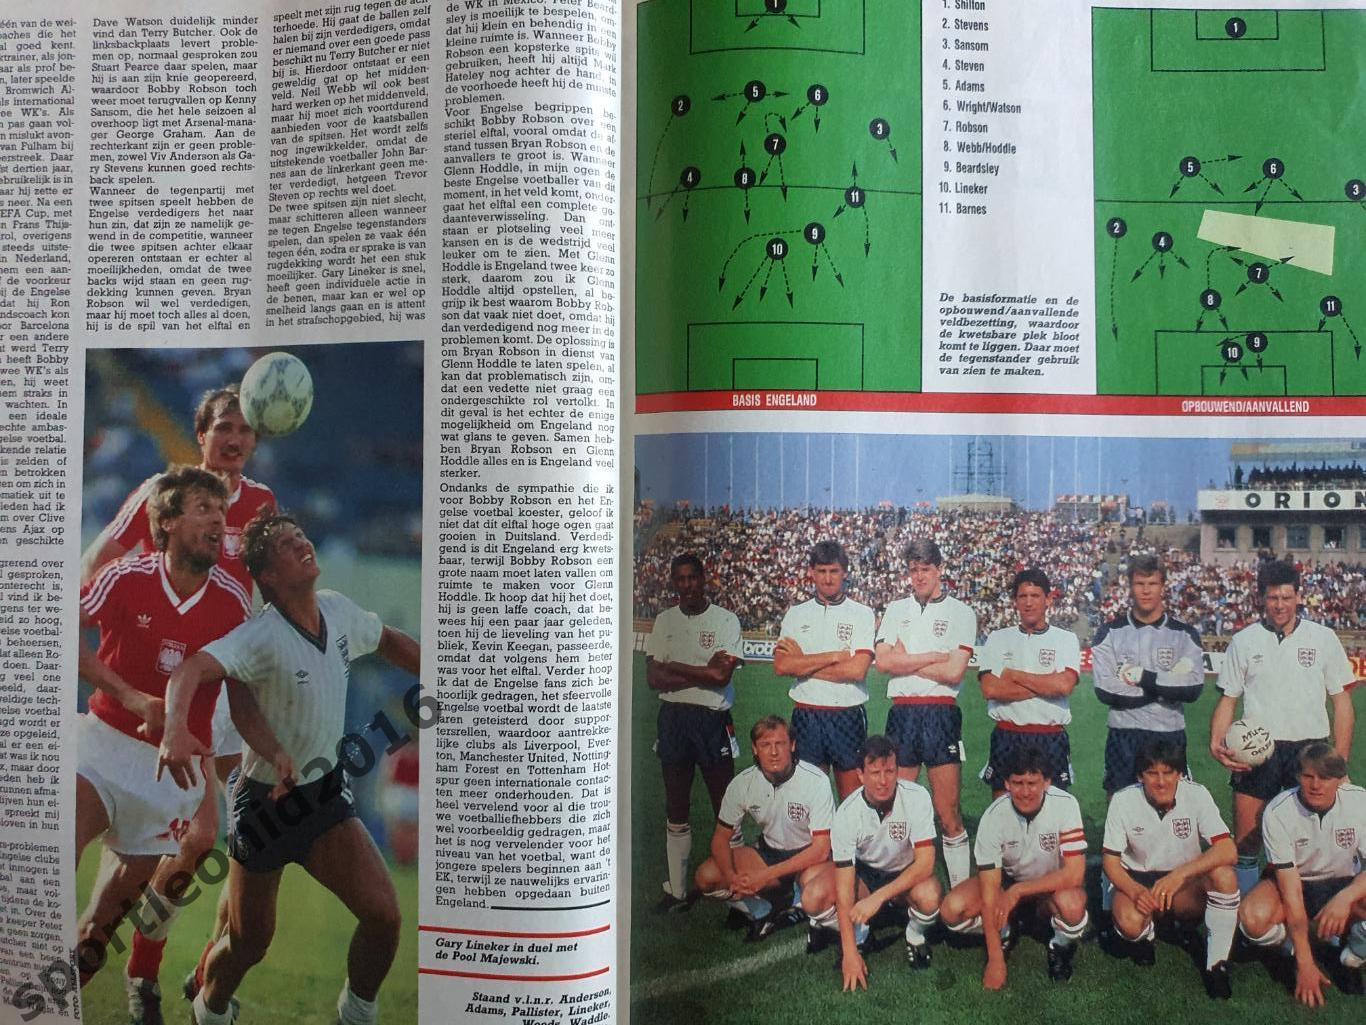 Voetbal International 1988.Годовая подписка.52 номера +4 спецвыпуска к Евро-88.3 2